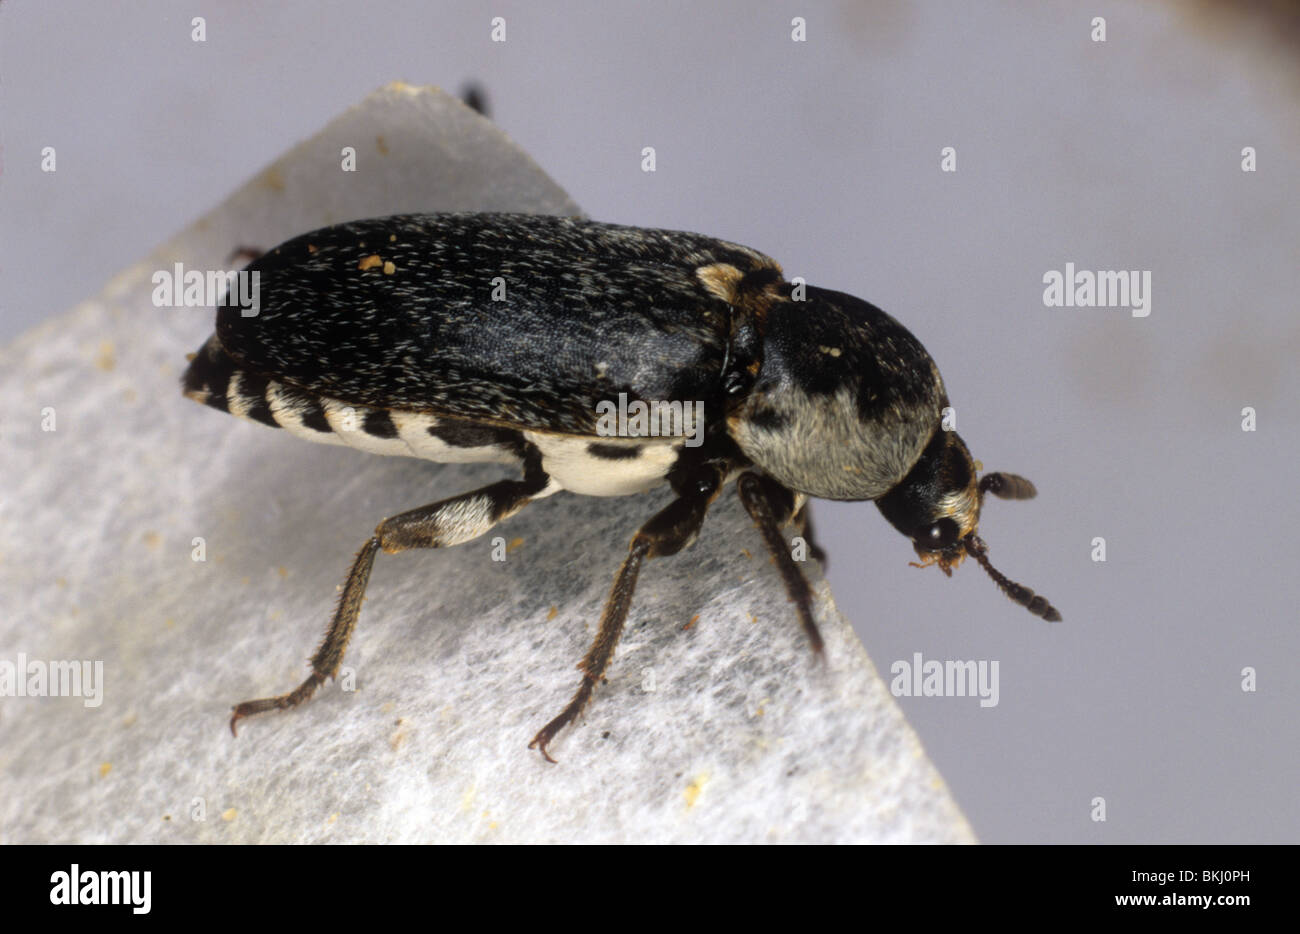 Ocultar (escarabajos Dermestes frischi plagas) adulto Foto de stock